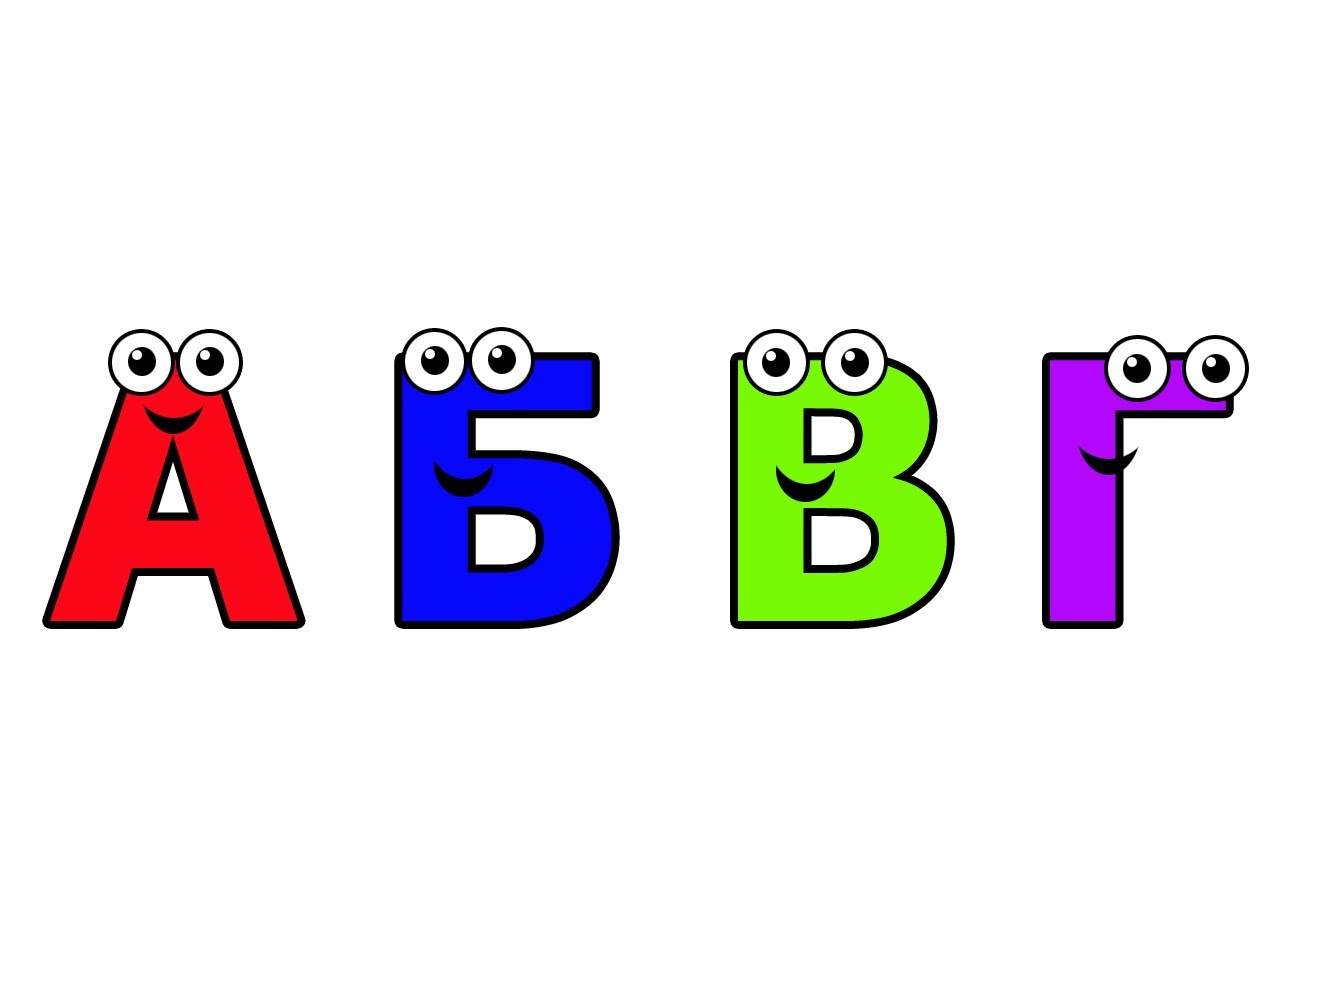 По английски а б в г. Буквы АБВГД. Цветные буквы на белом фоне. Алфавит и буквы. Буквы алфавита для детей.